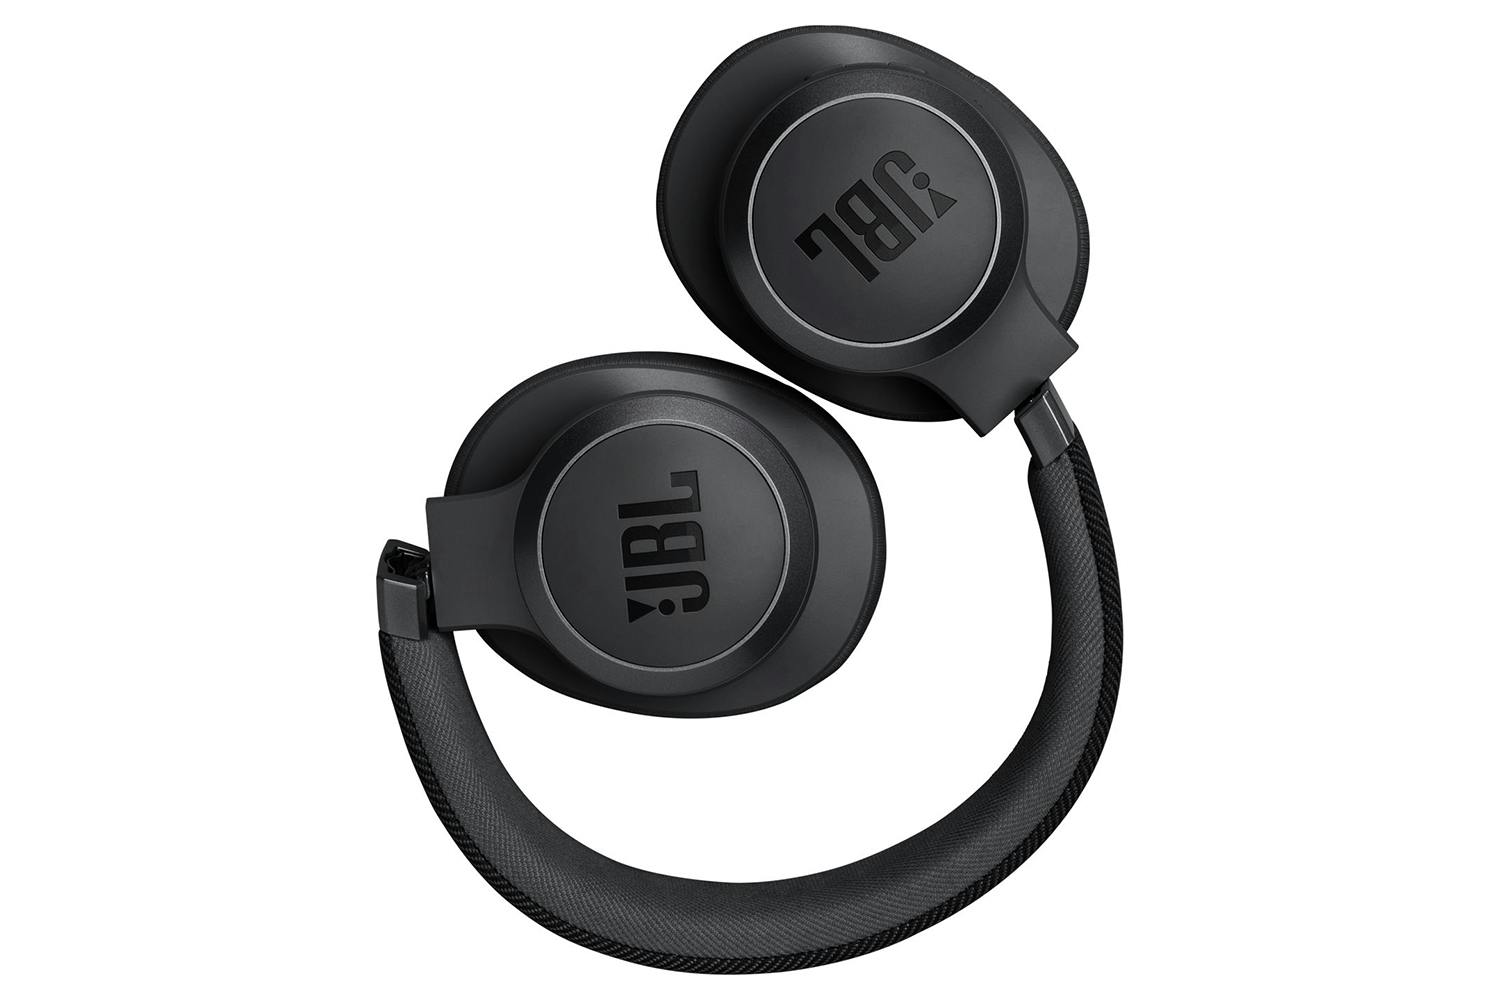 JBL LIVE 770NC headphones